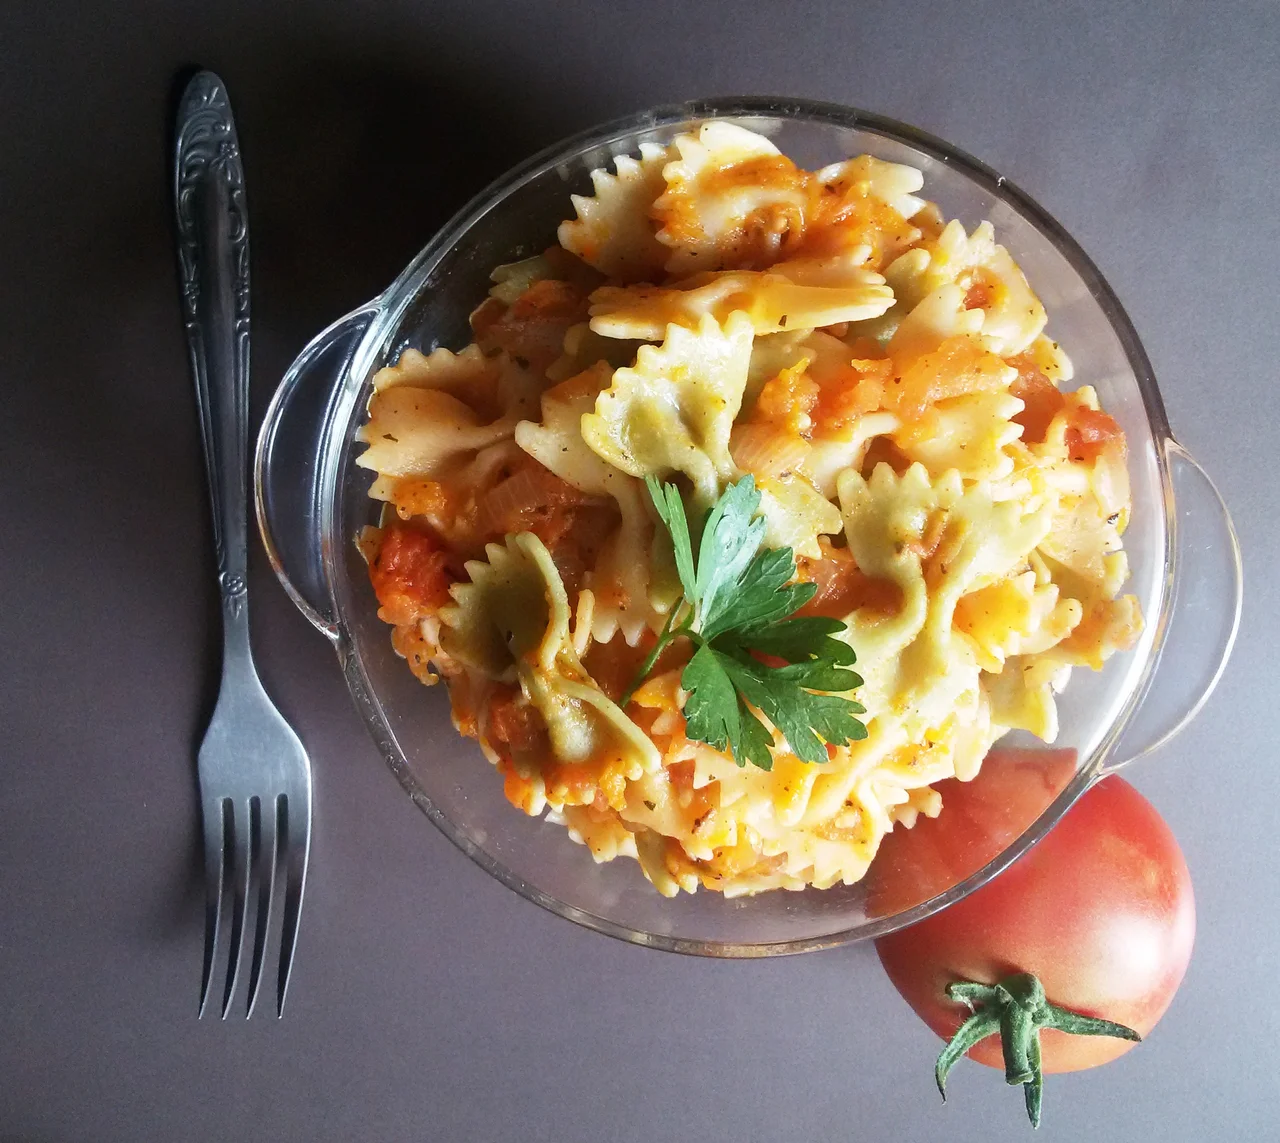 Pasta with fresh tomato sauce / Nuddeln mit Tomatensosse / Makaron z sosem ze świeżych pomidorów